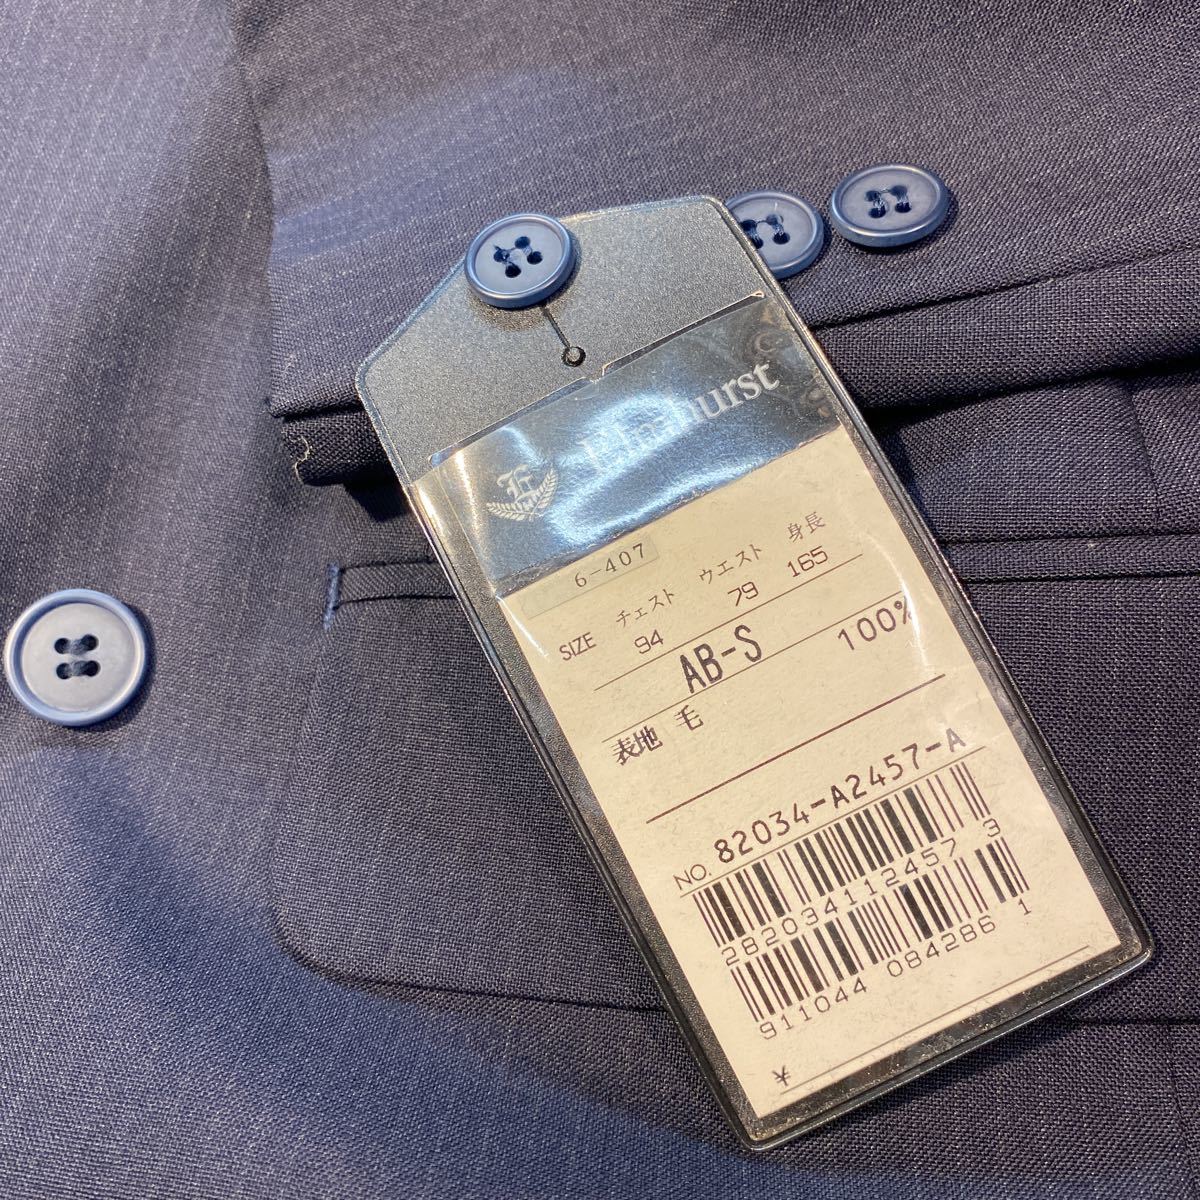  с биркой высококлассный Elmhurst Vintage двубортный костюм выставить размер ABS темно синий темно-синий серия глянец ткань в тонкую полоску шерсть 100%6. кнопка редкость 